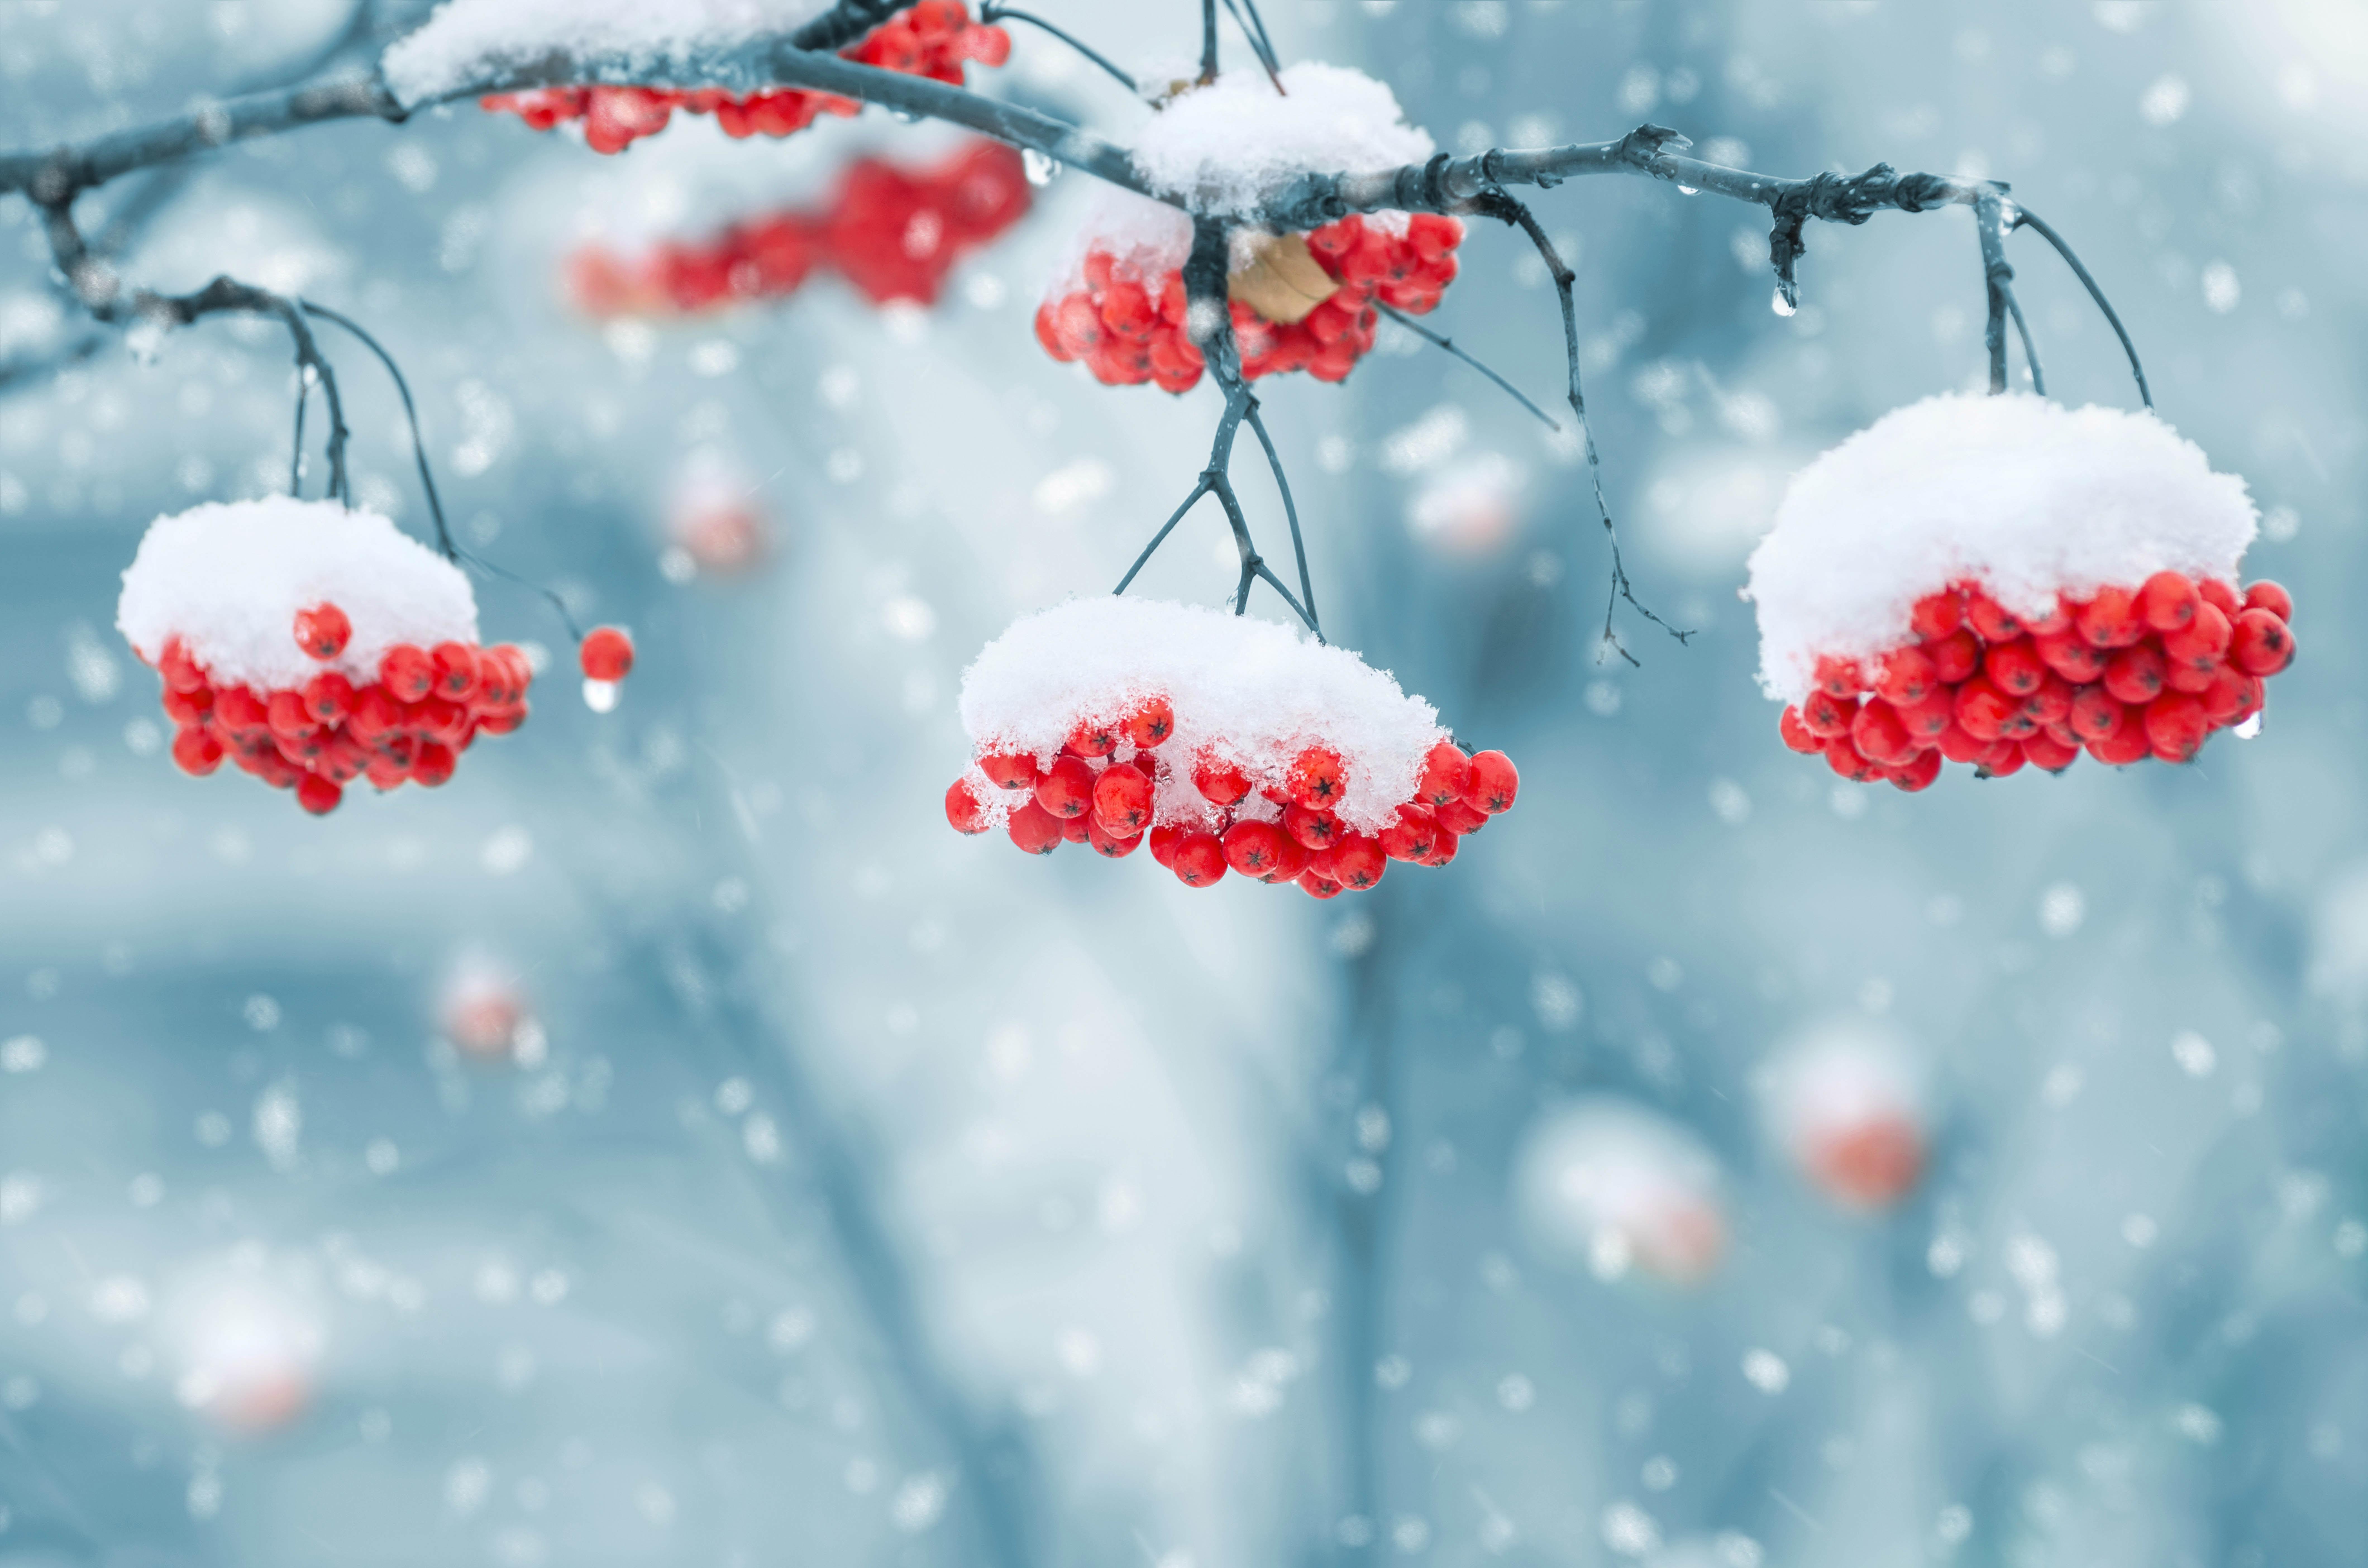 Волшебство зимы: Рябина в снегу | Рябина в снегу Фото №1368363 скачать